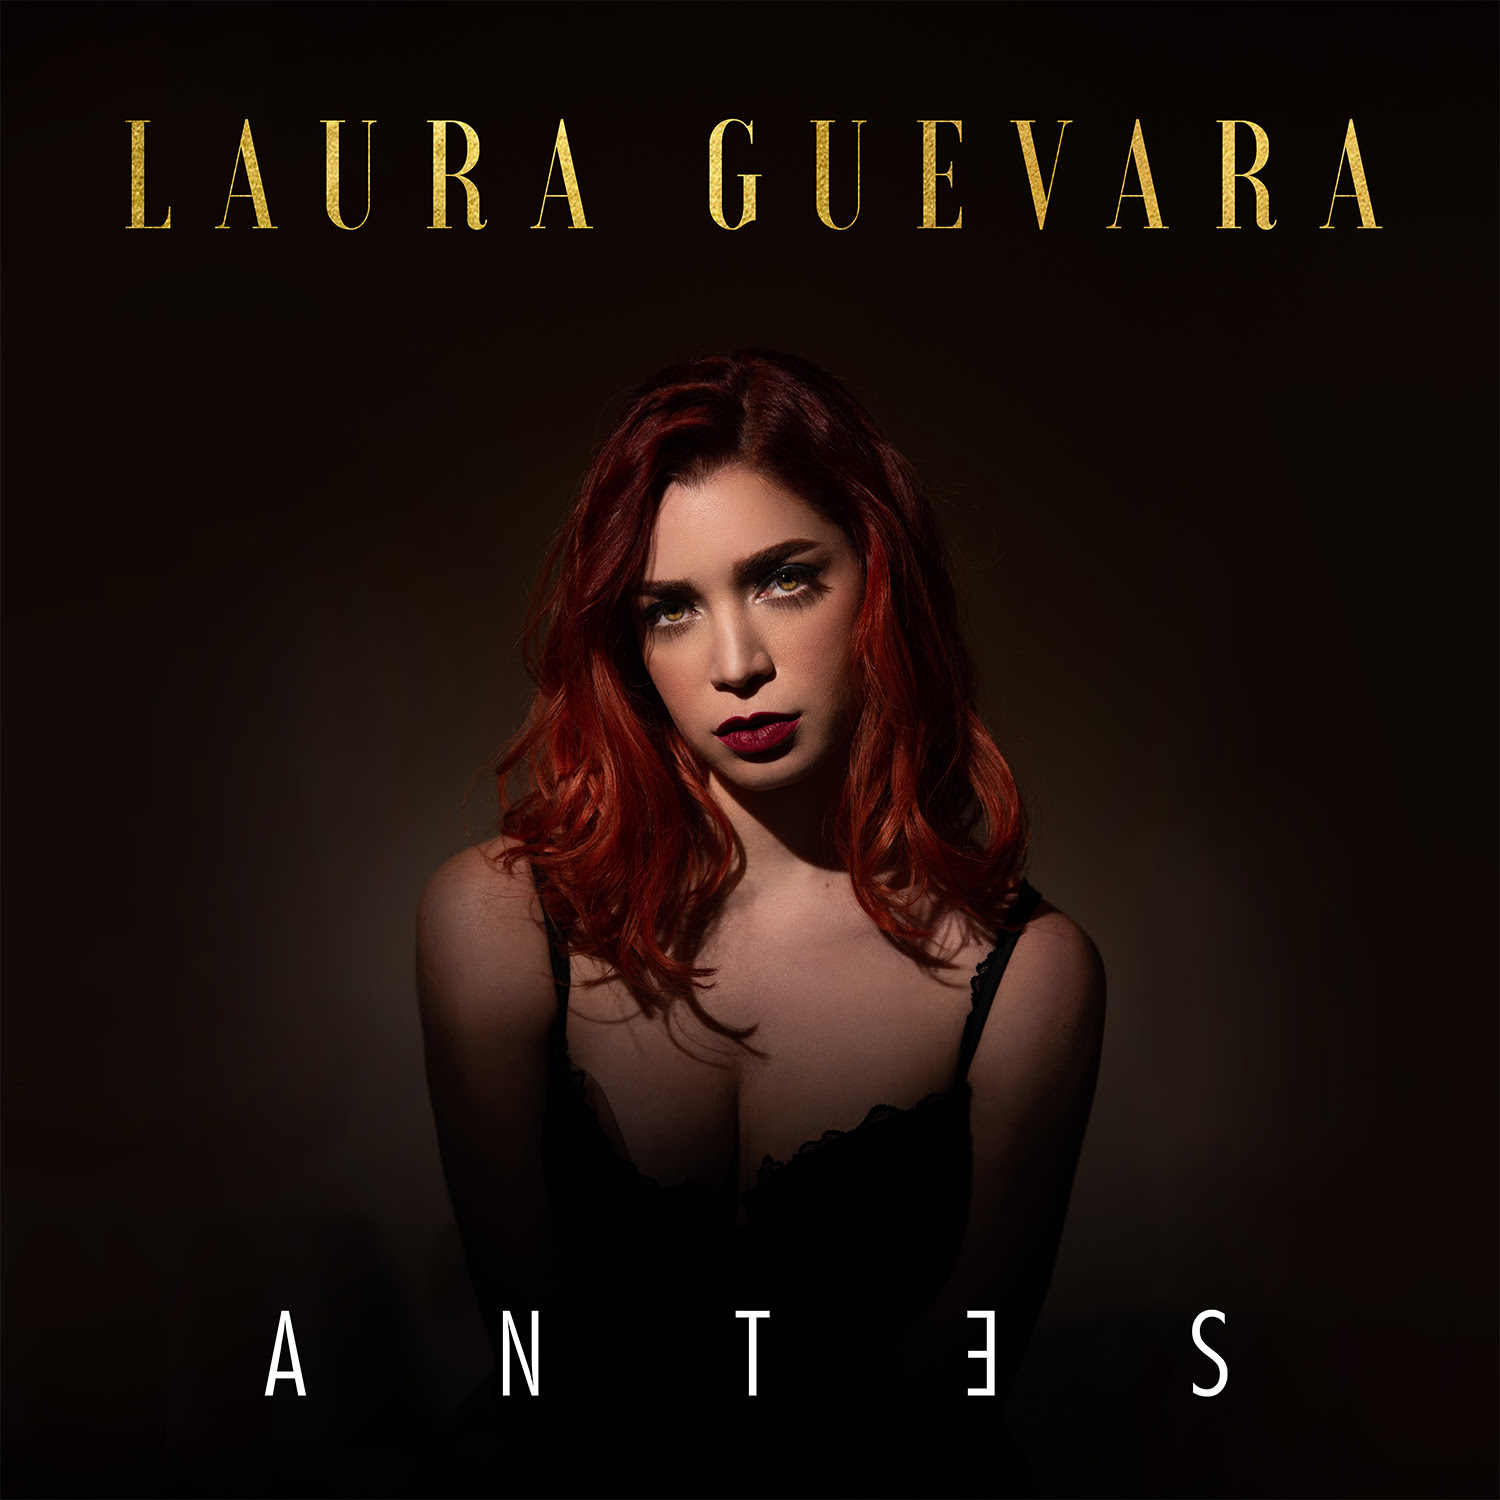  Laura Guevara presenta “Antes”